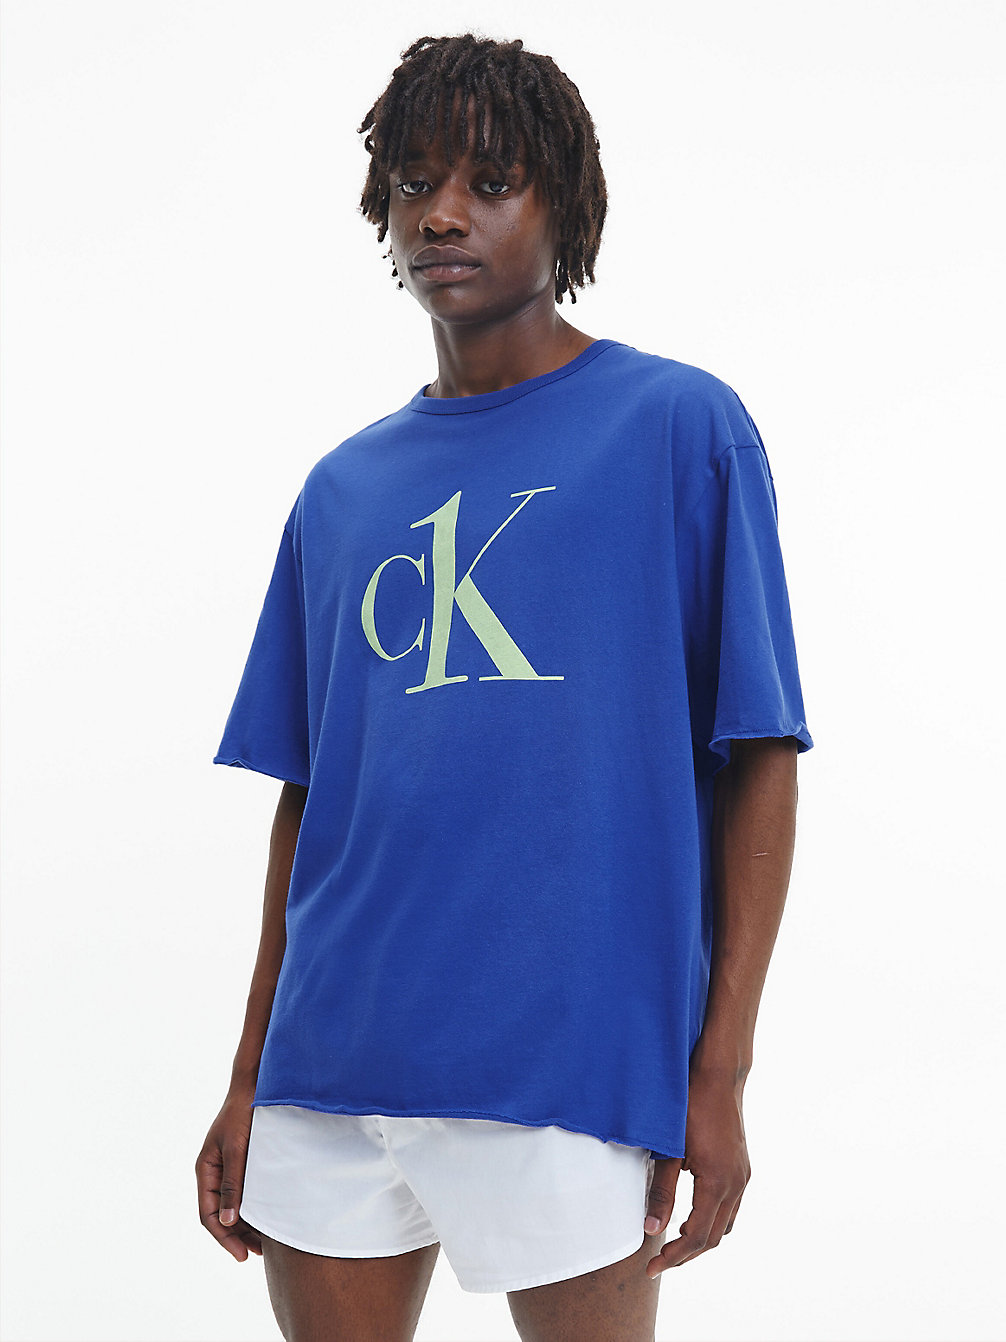 CLEMATIS Lounge-T-Shirt – CK One undefined Herren Calvin Klein